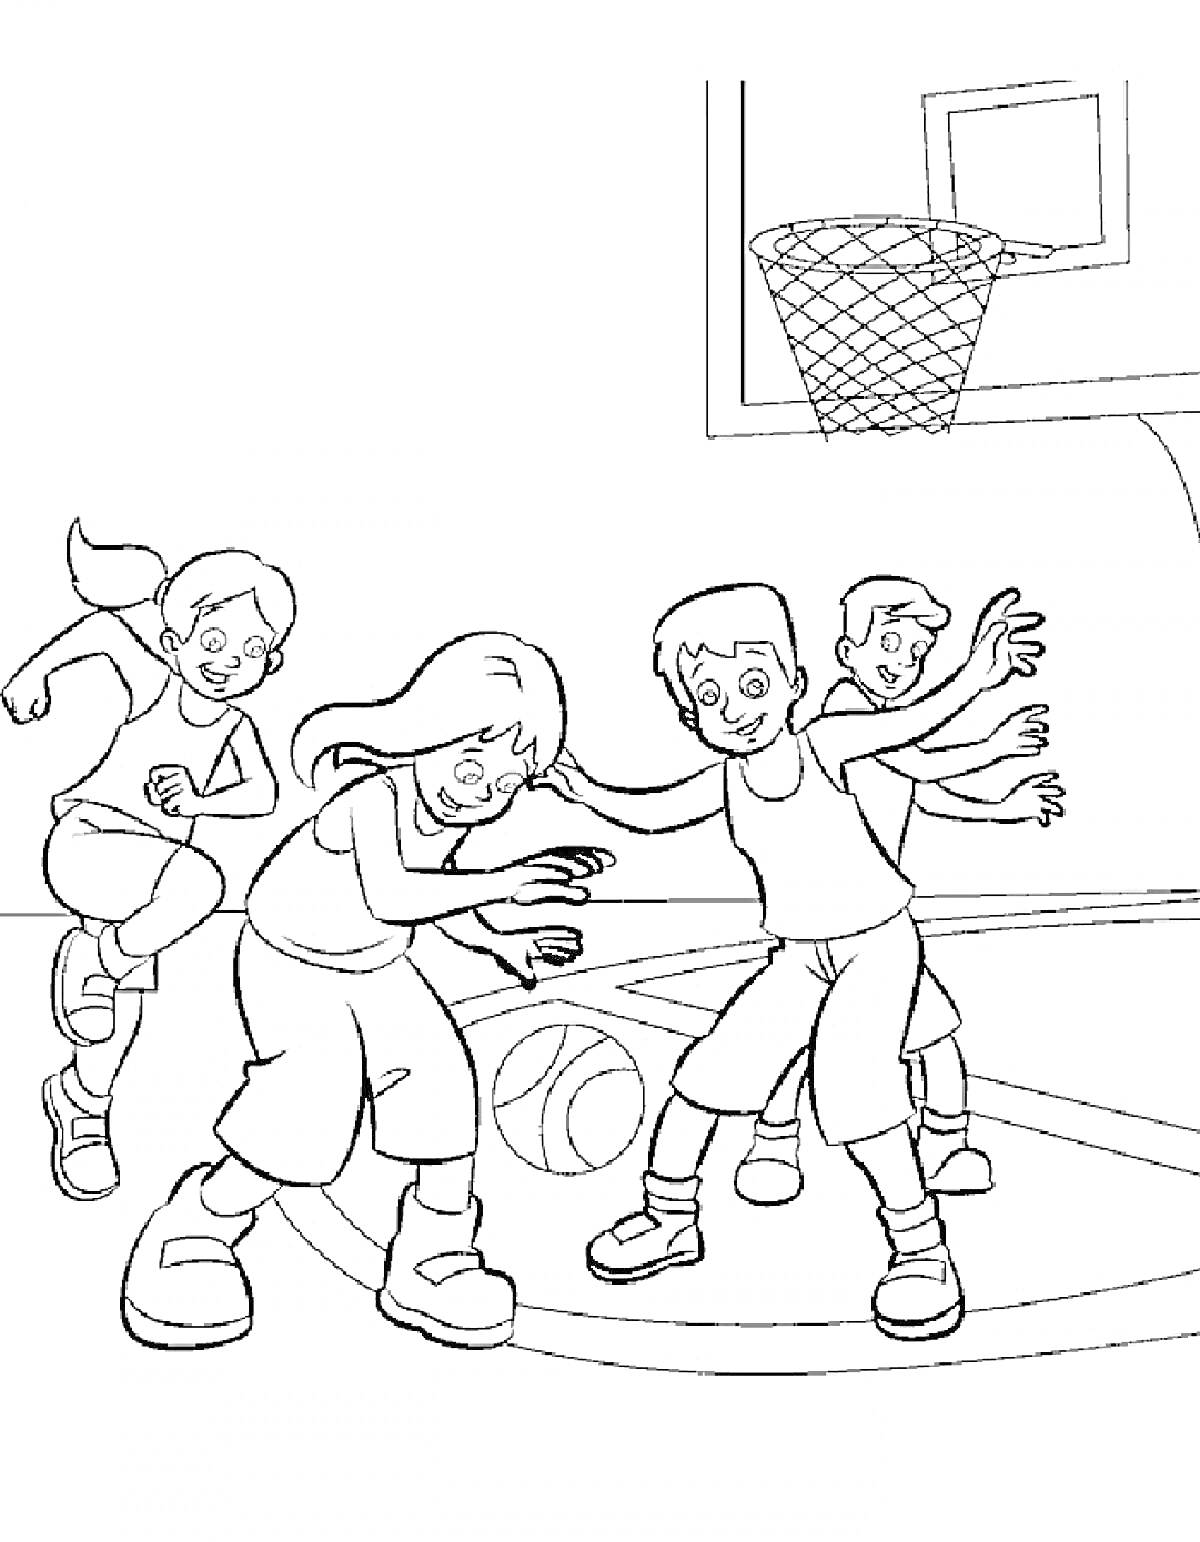 Дети играют в баскетбол на баскетбольной площадке